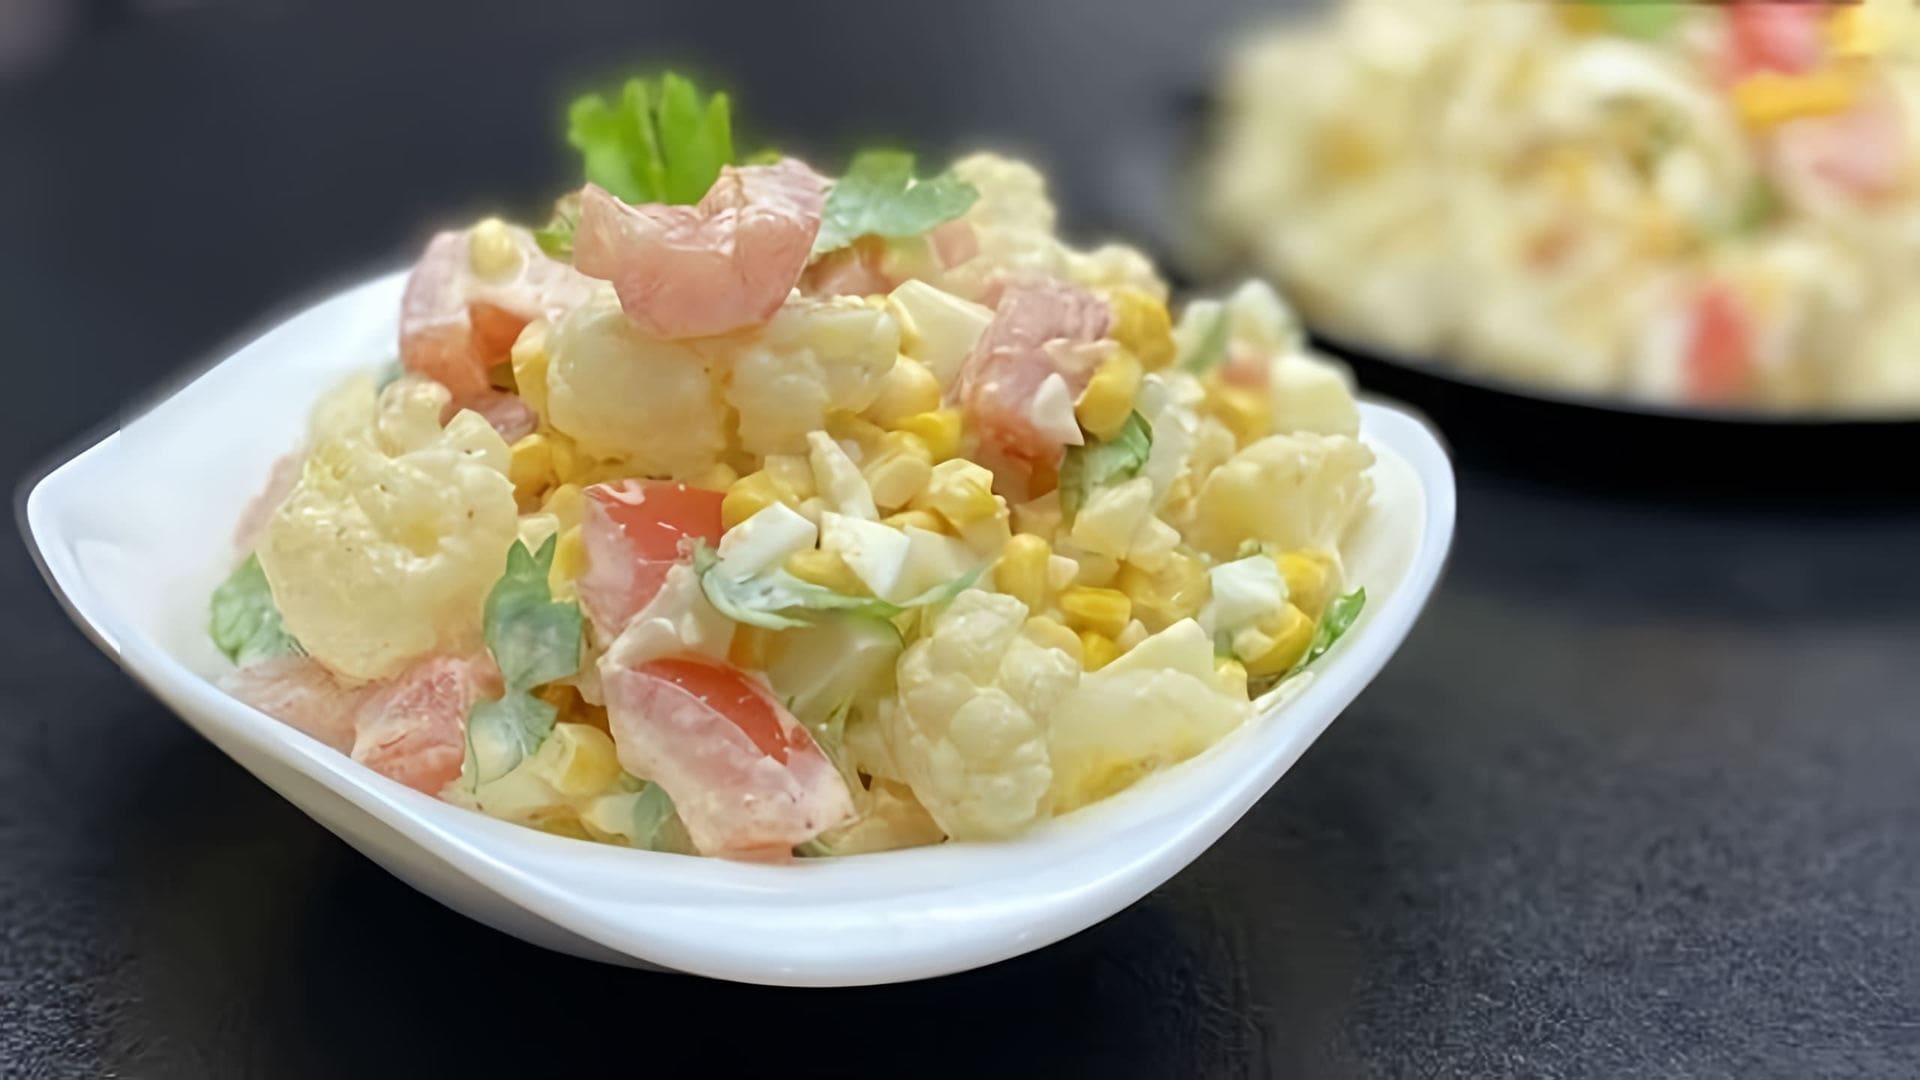 В этом видео демонстрируется процесс приготовления вкусного салата из цветной капусты